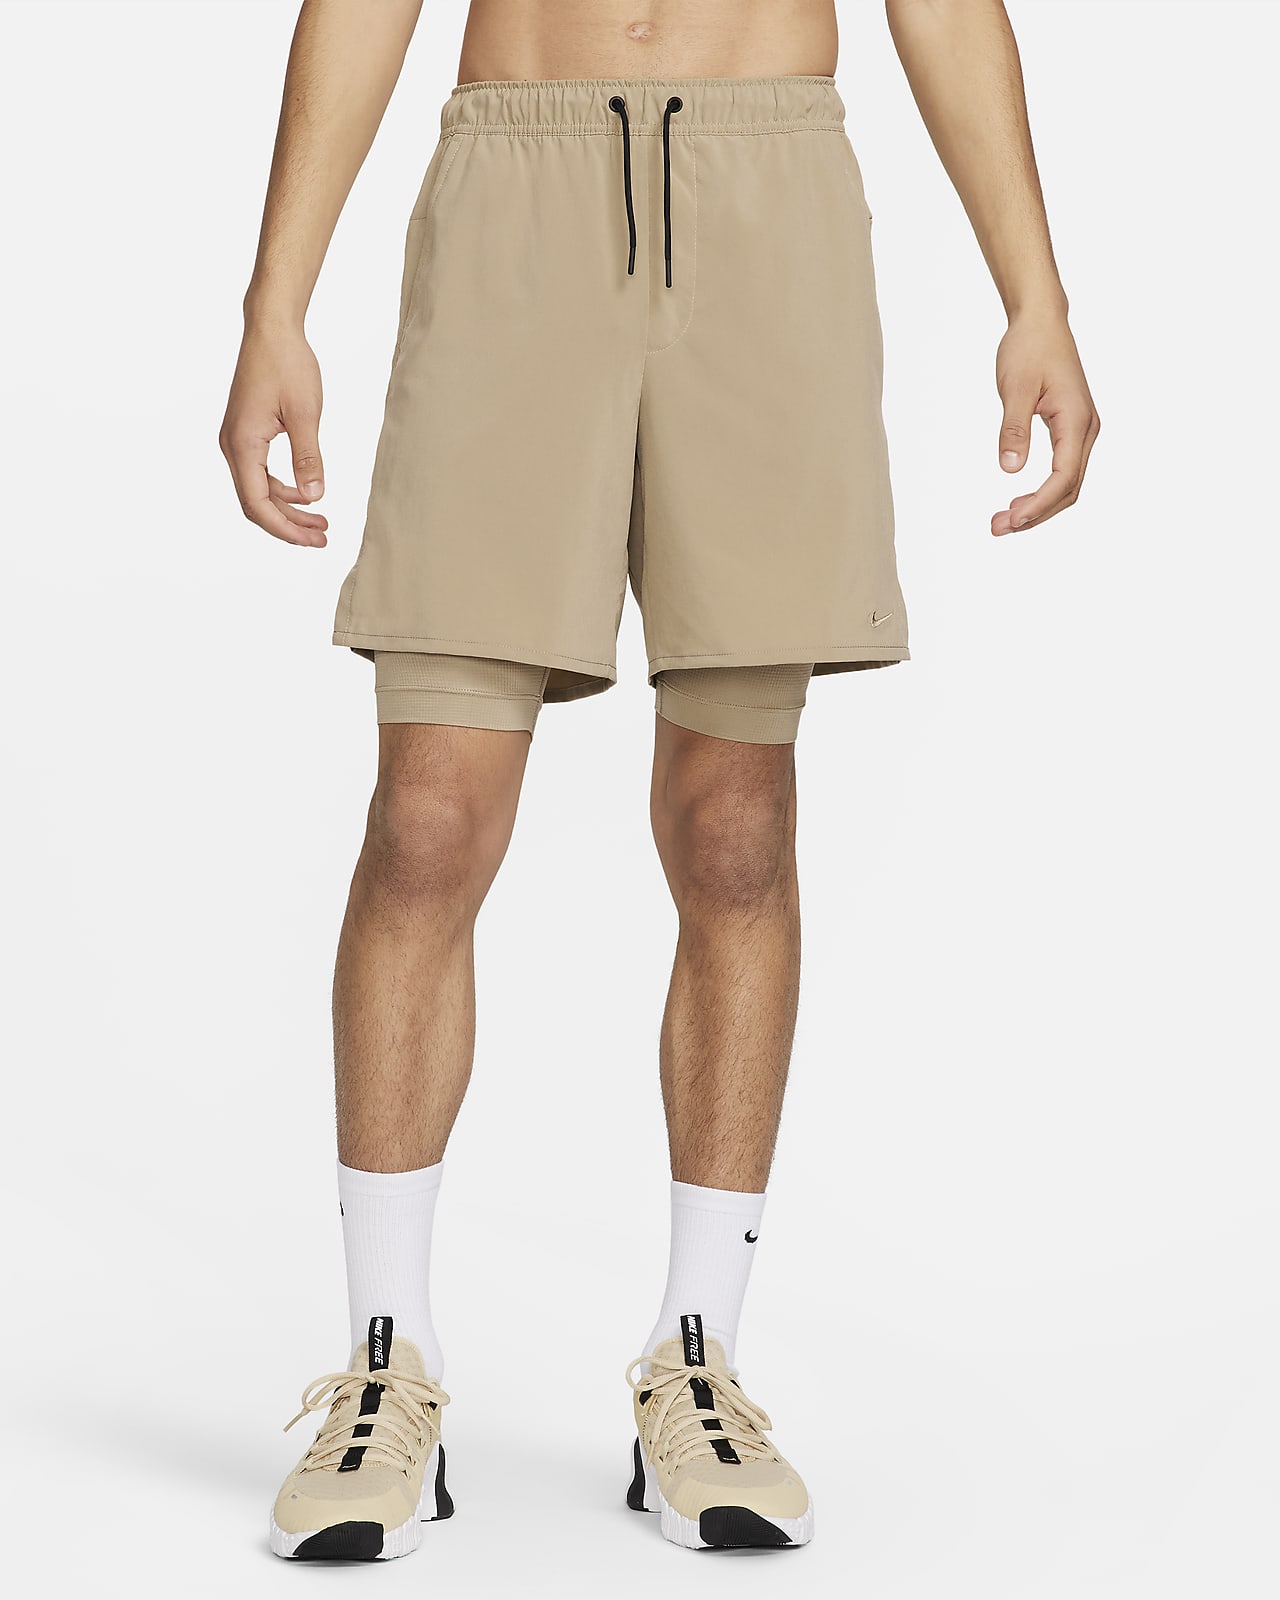 Shorts versátiles Dri-FIT de 18 cm 2 en 1 para hombre Nike Unlimited